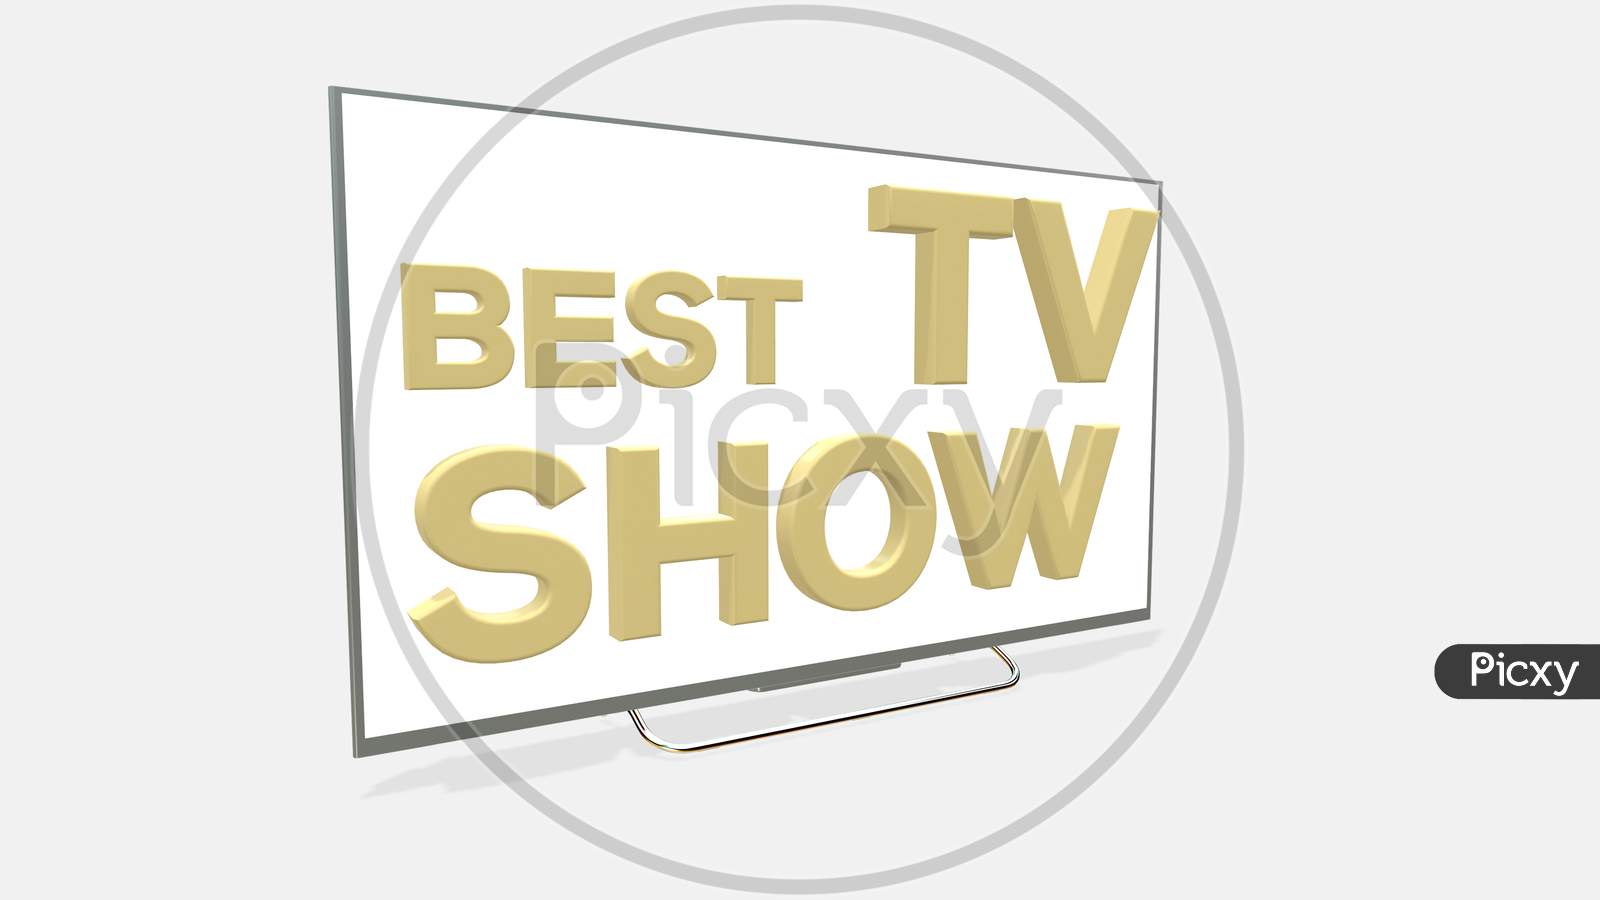 Best Tv Show Emblem Design Illustration On White Background